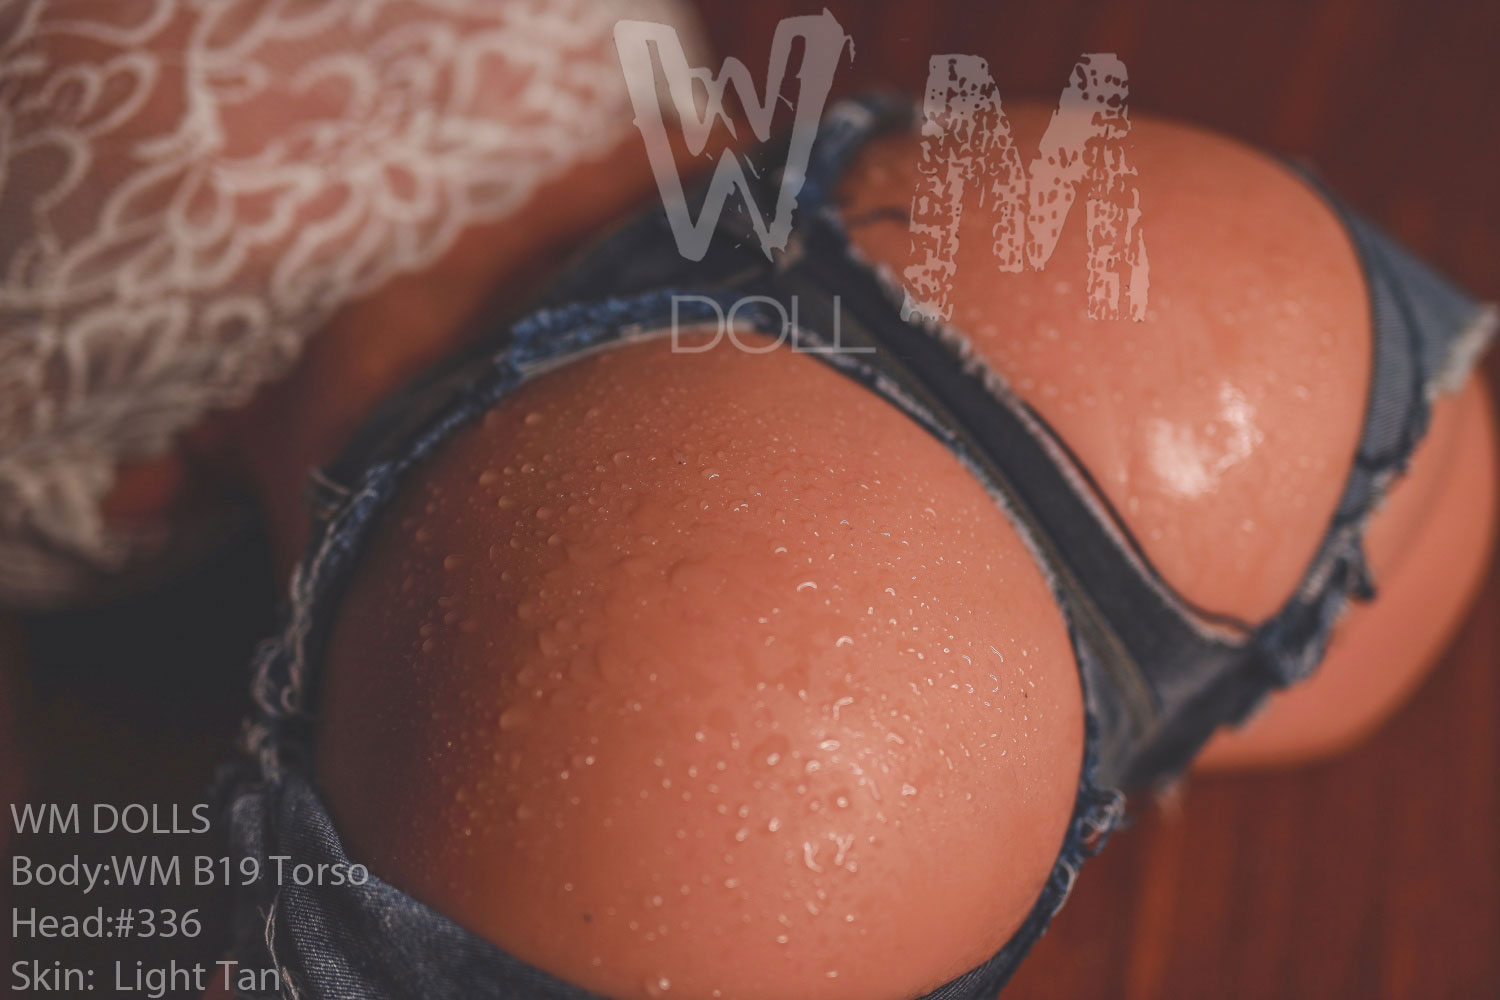 WM DOLLS - TORSO - B19 +#336 by Anmodolls